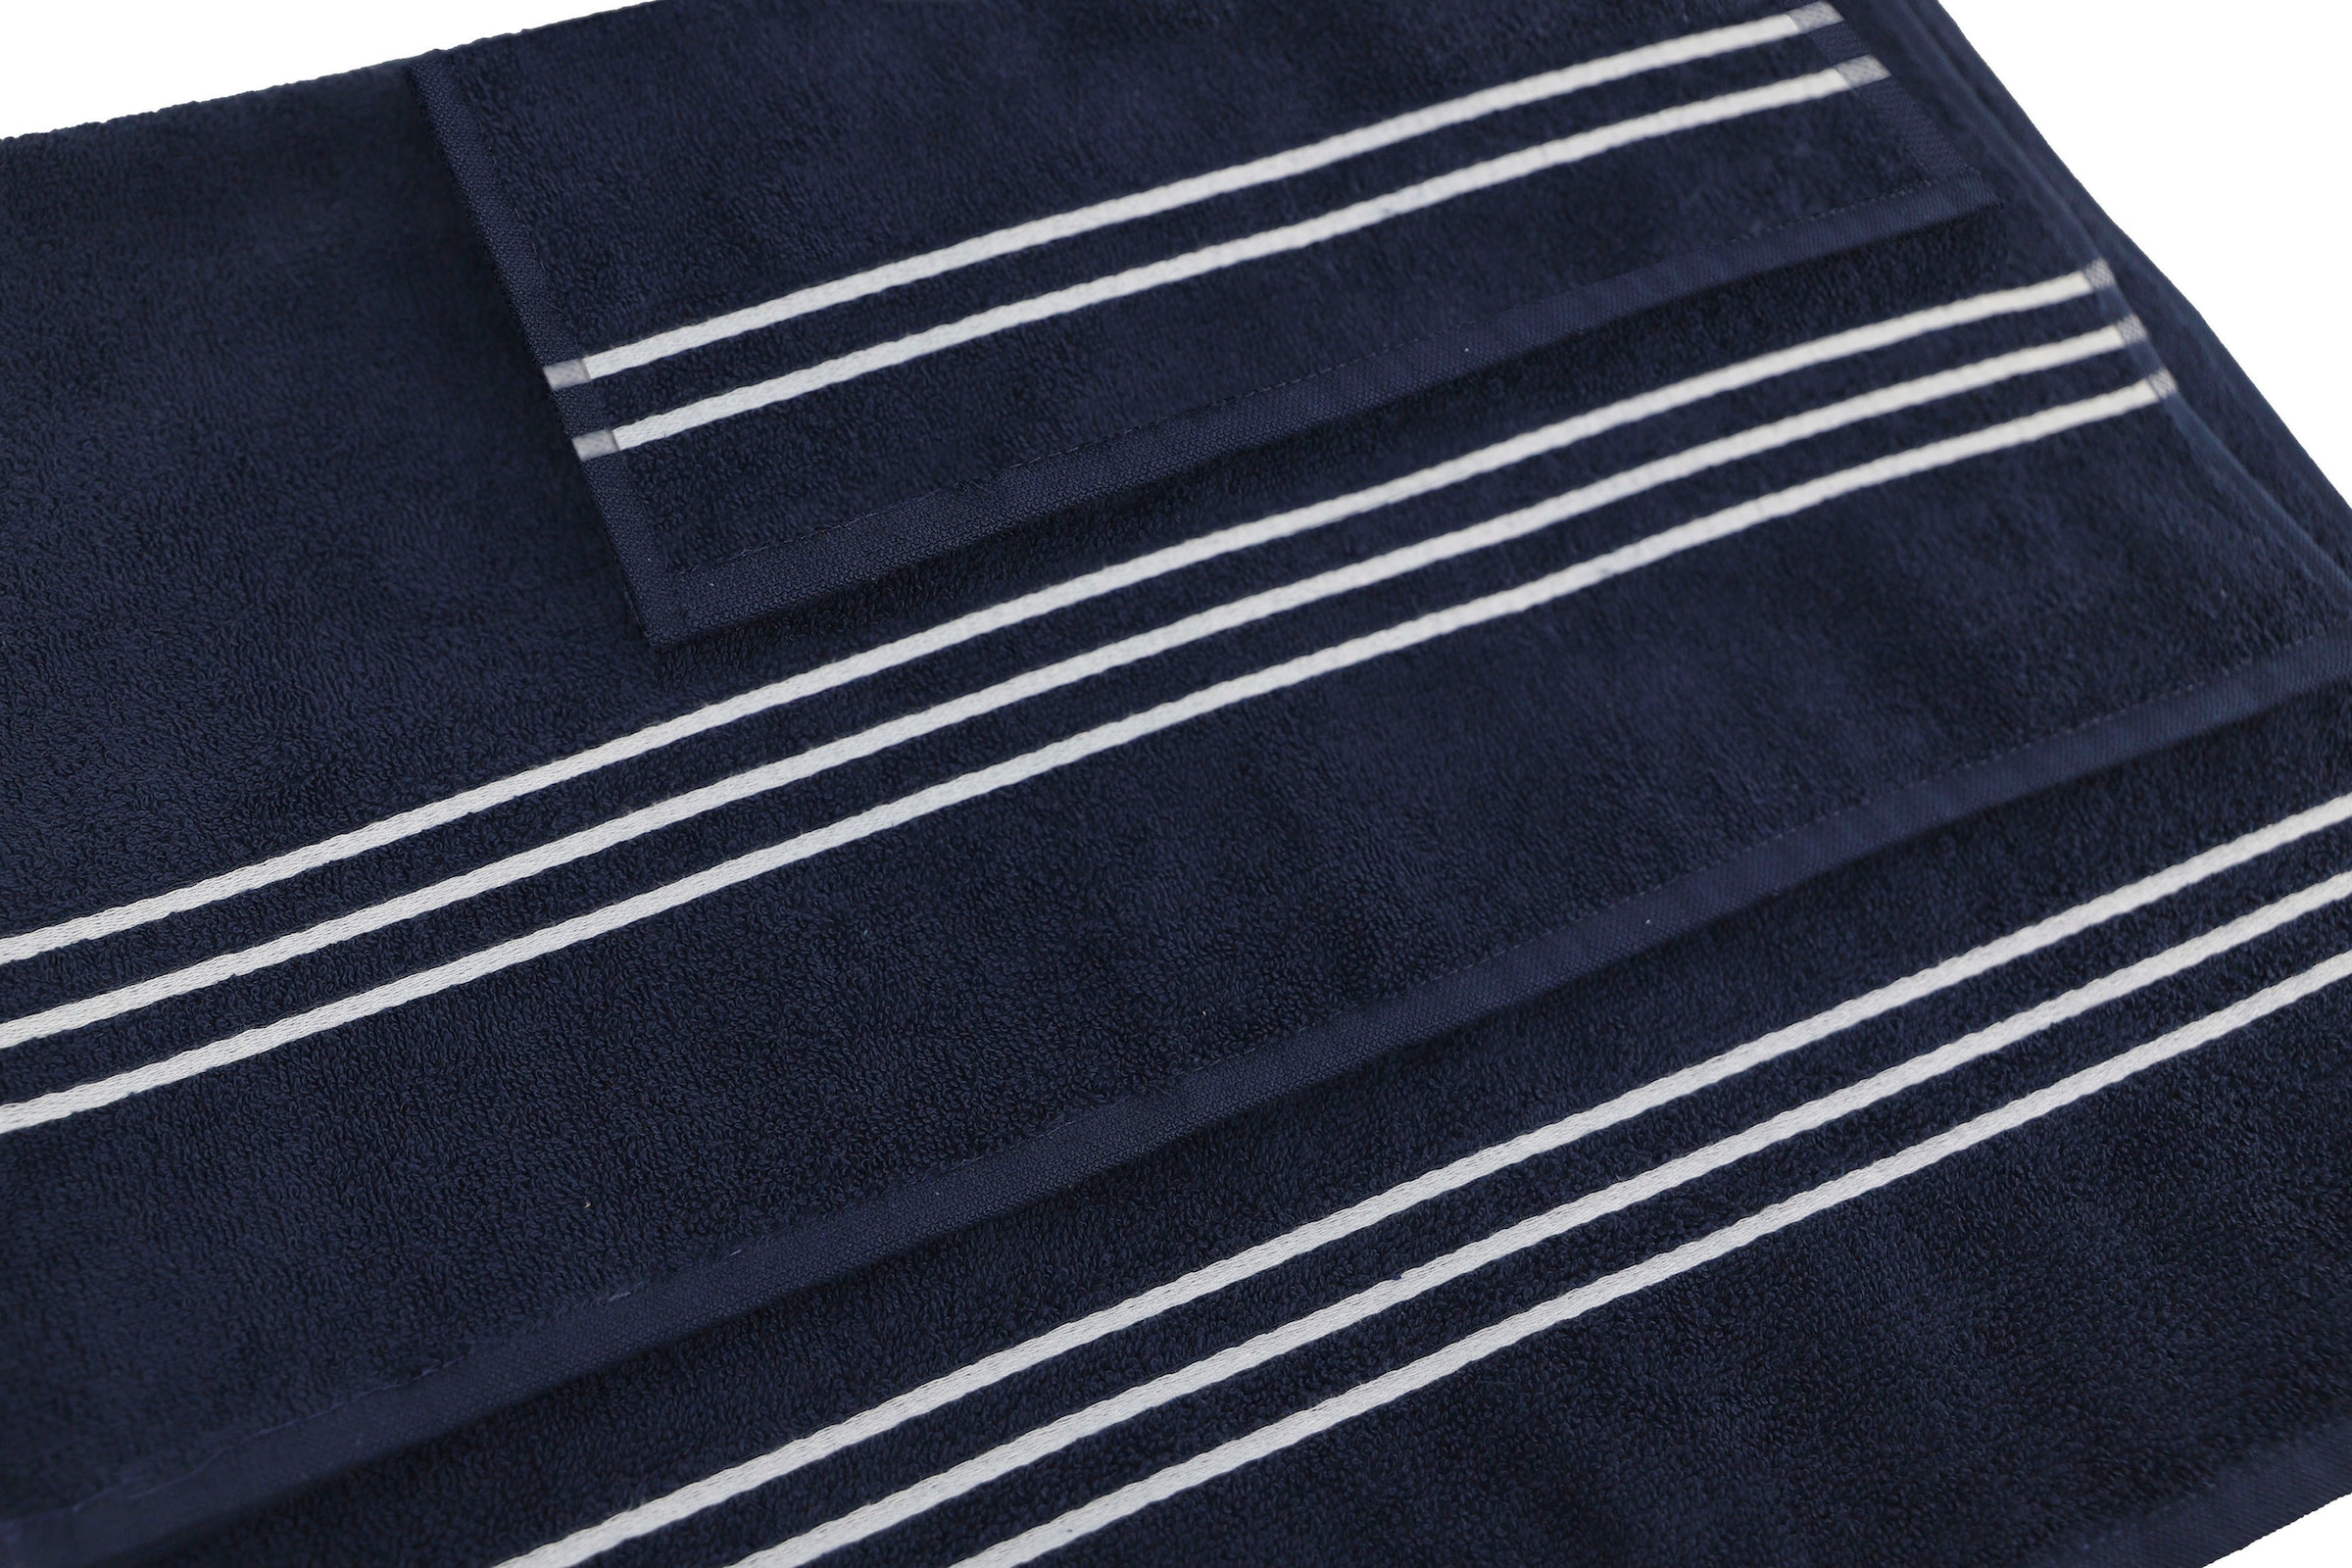 KangaROOS Handtuch Set »Dalia«, (Set, 6 St., 2 Badetücher 70x140 cm-2 Handtücher 50x100 cm-2 Waschlappen 30x30 cm), mit Streifenbordüre, einfarbiges Handtuch-Set aus 100% Baumwolle